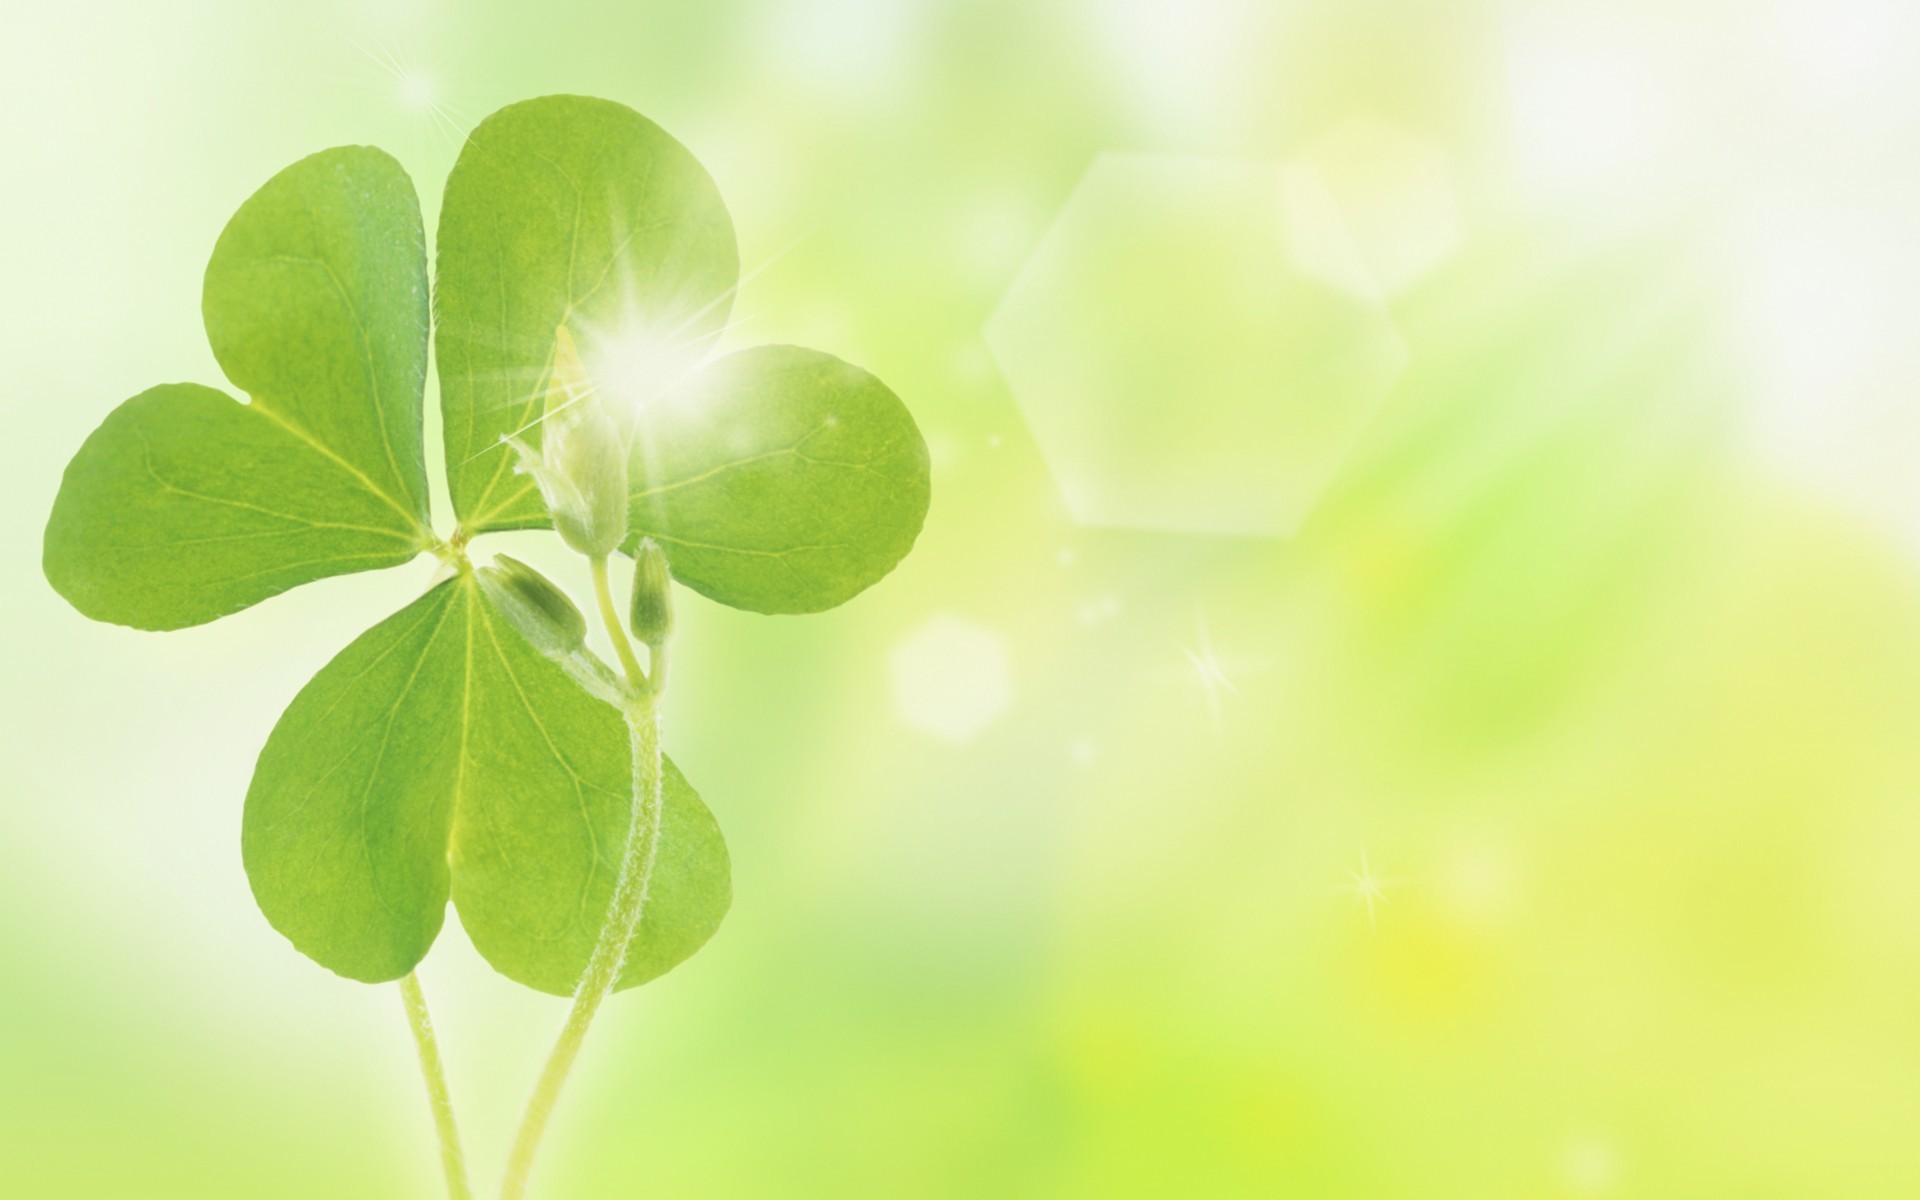 Cỏ ba lá là biểu tượng may mắn phổ biến và được yêu thích trong văn hóa Ireland. Hãy cùng Chuyên gia của chúng tôi khám phá lý do tại sao nó lại may mắn. Bạn cũng có thể tìm kiếm những bức ảnh đẹp về cỏ ba lá để cùng nhau khám phá và trang trí cho ngôi nhà của mình thêm sinh động.